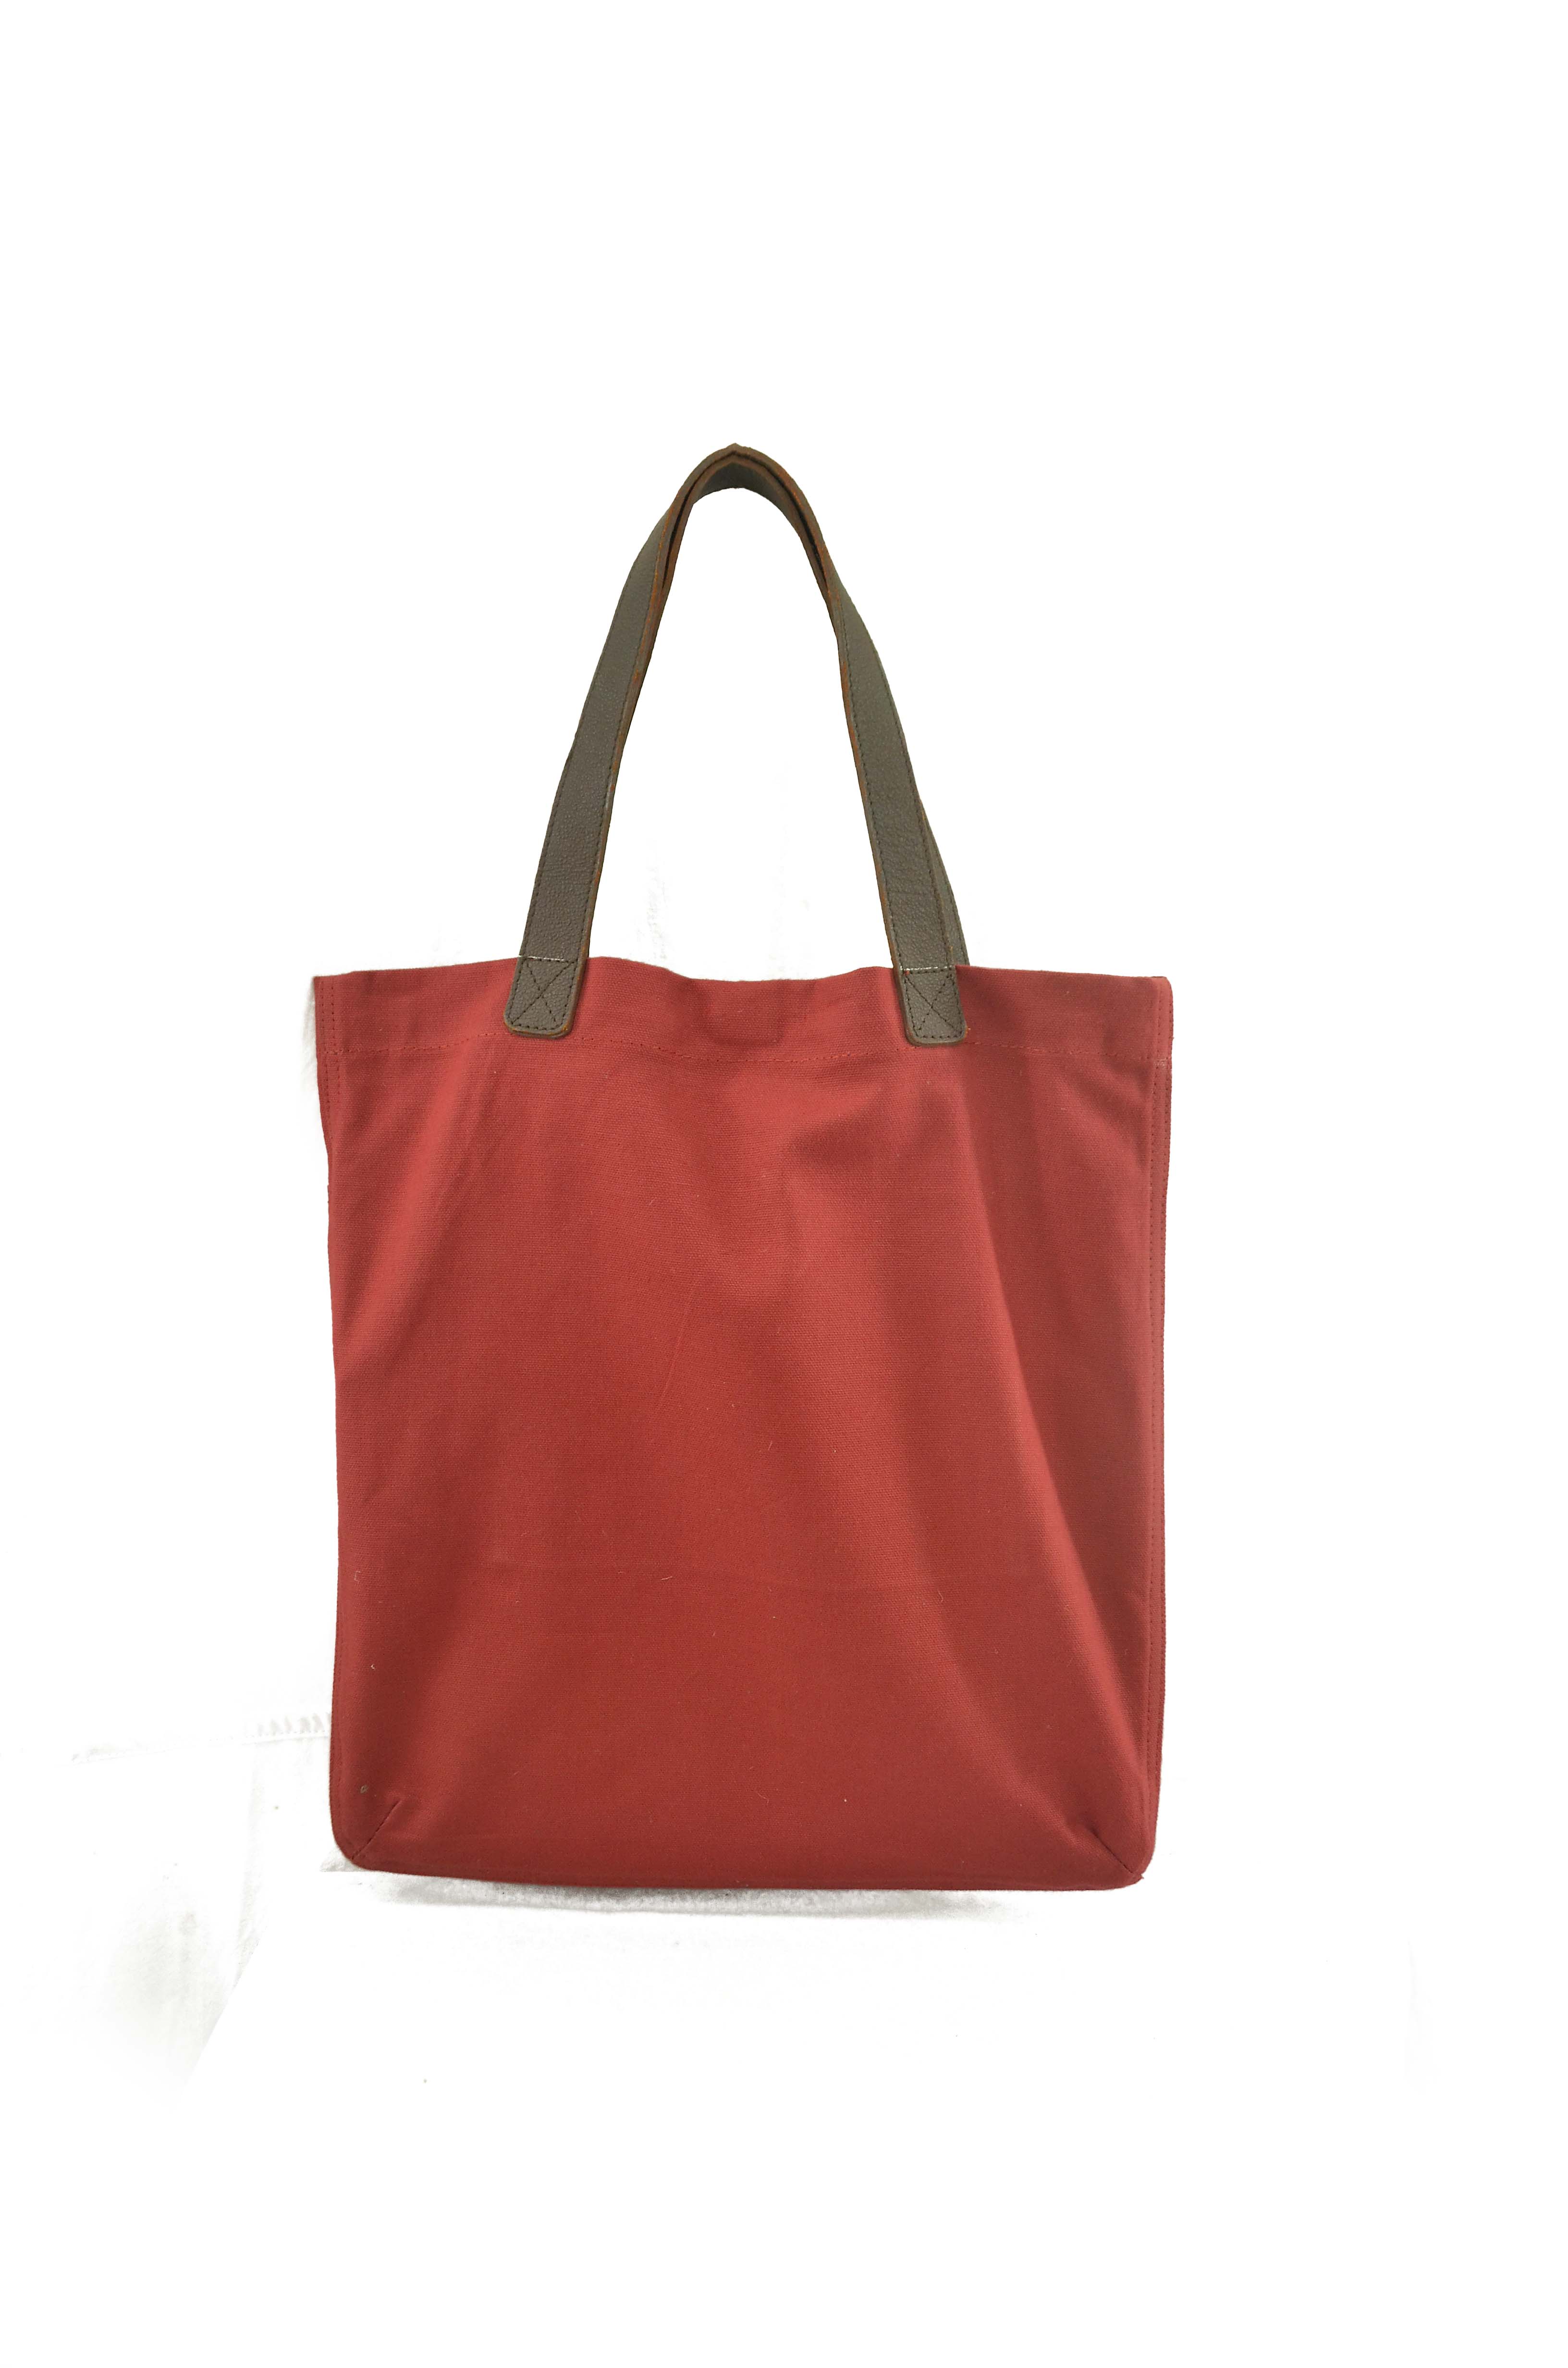 Victoria's Secret Corduroy Satchel Bag Purse Zip Close Double Handle Rust  Color | eBay